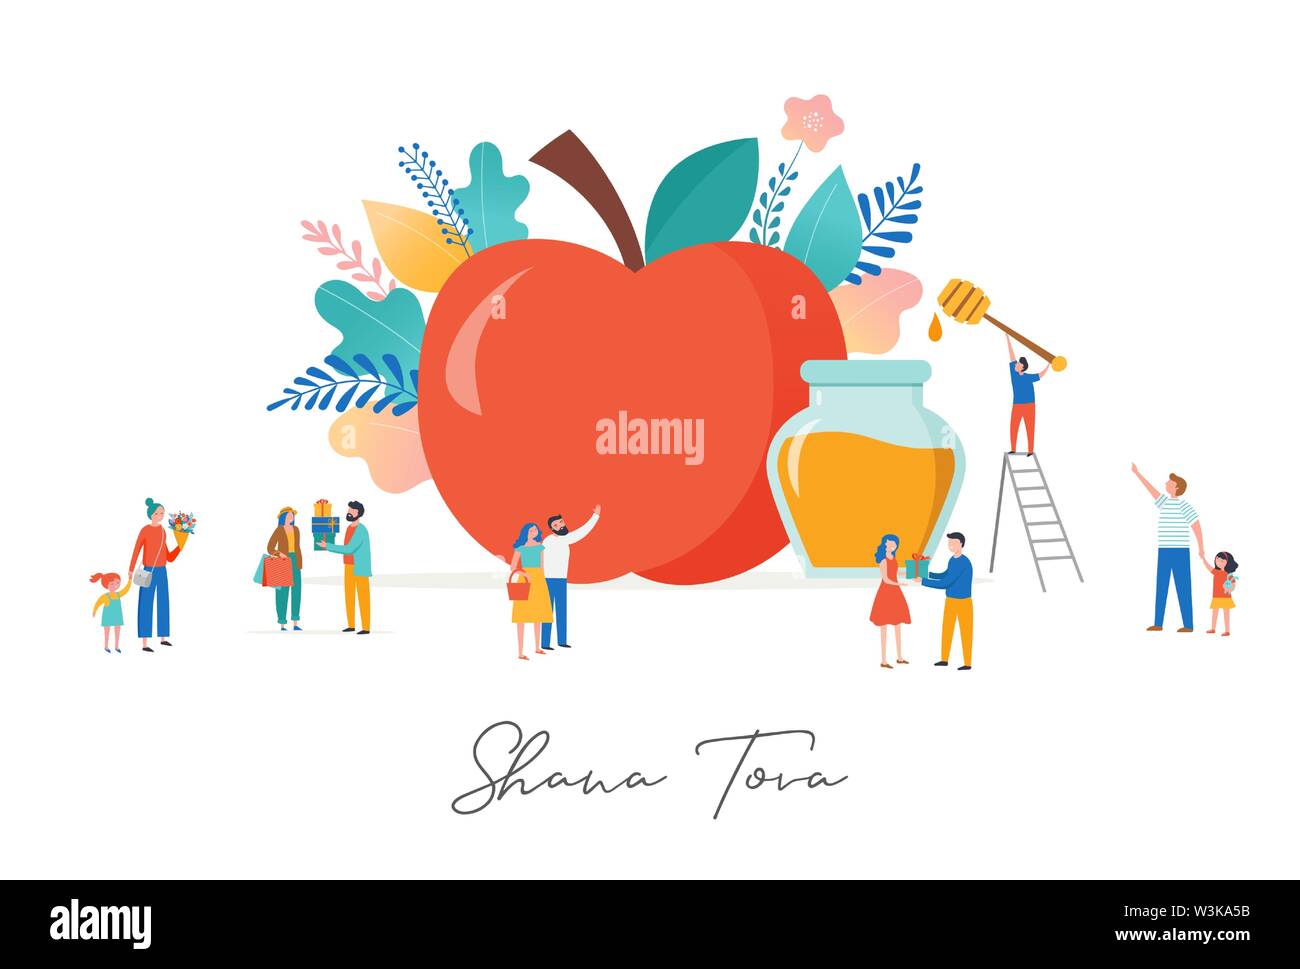 Rosh Hashana, Nouvel an juif, de scène avec une pomme, petits varios personnes, hommes, femmes et enfants de donner des cadeaux, holding flower, manger des pommes avec h Illustration de Vecteur